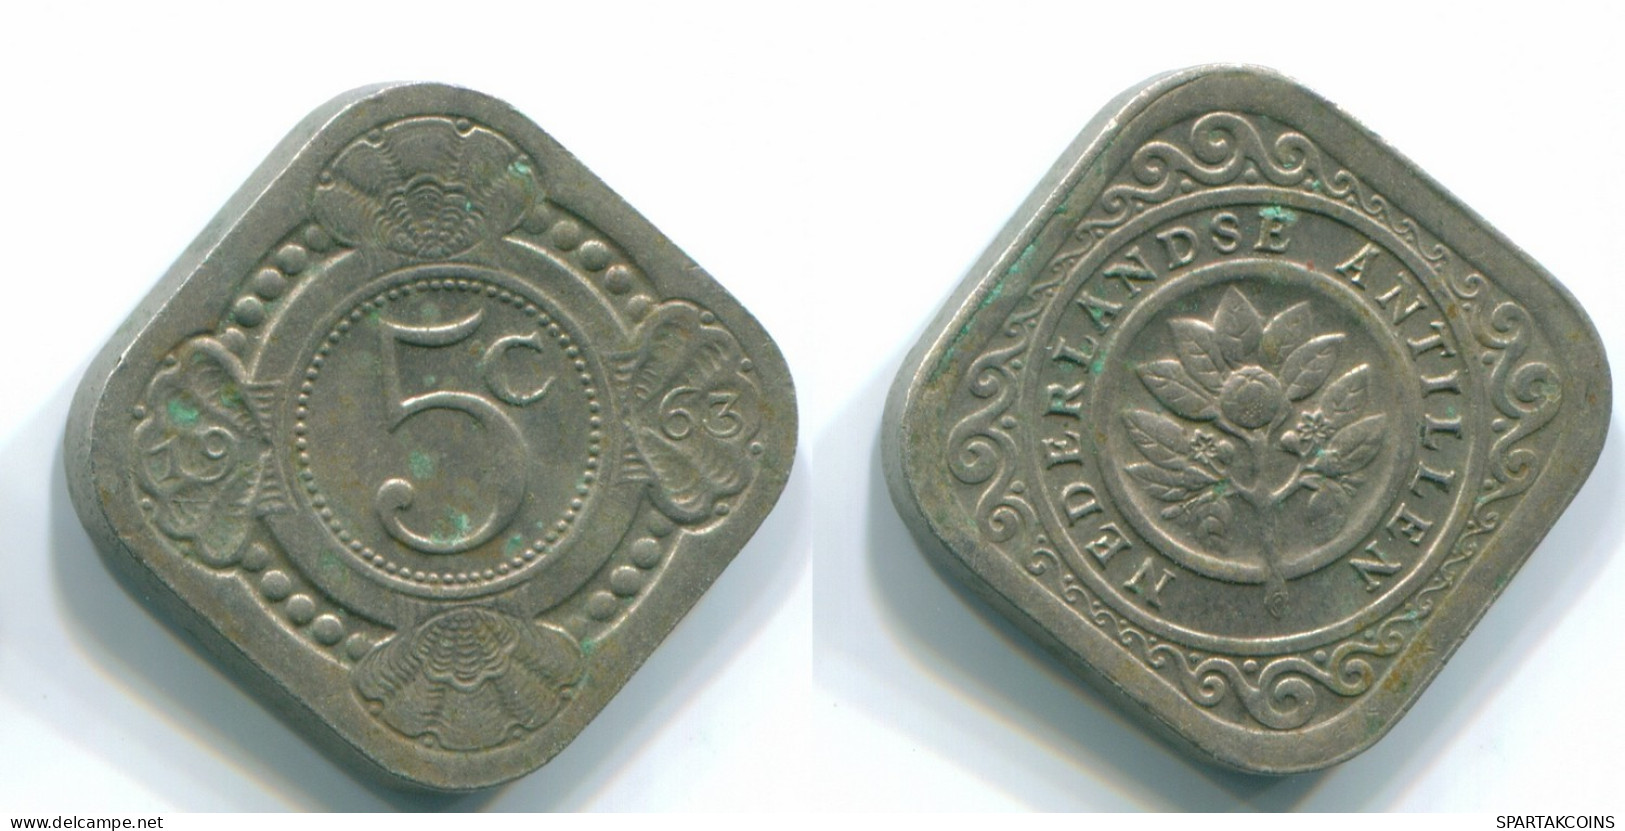 5 CENTS 1963 NIEDERLÄNDISCHE ANTILLEN Nickel Koloniale Münze #S12426.D.A - Antilles Néerlandaises